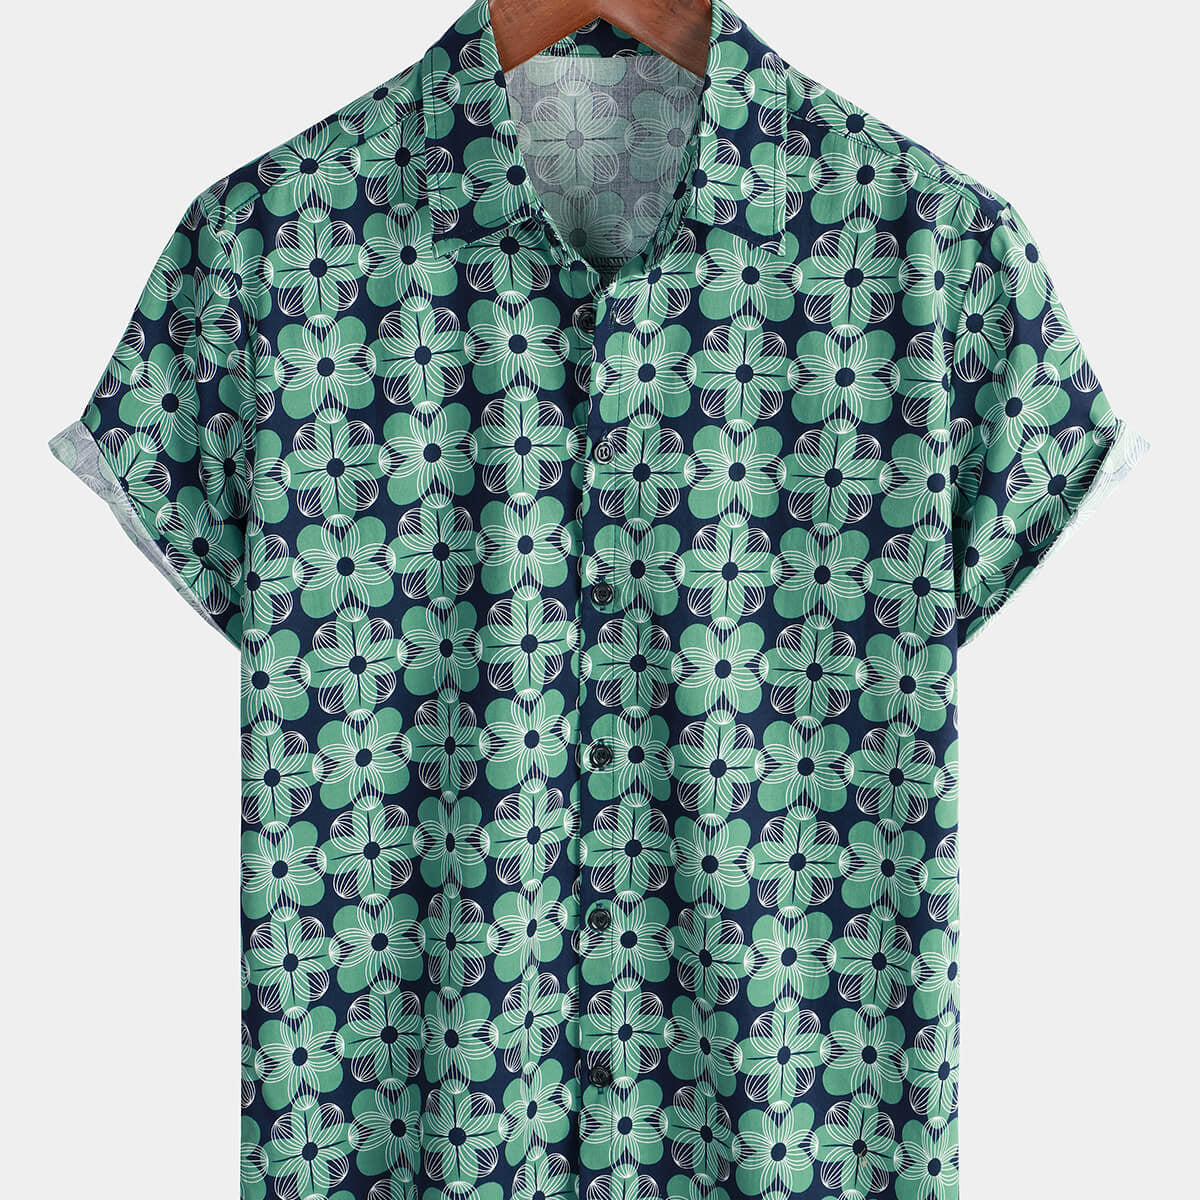 Men's Green Floral Cotton Summer Button Up Short Sleeve Shirt